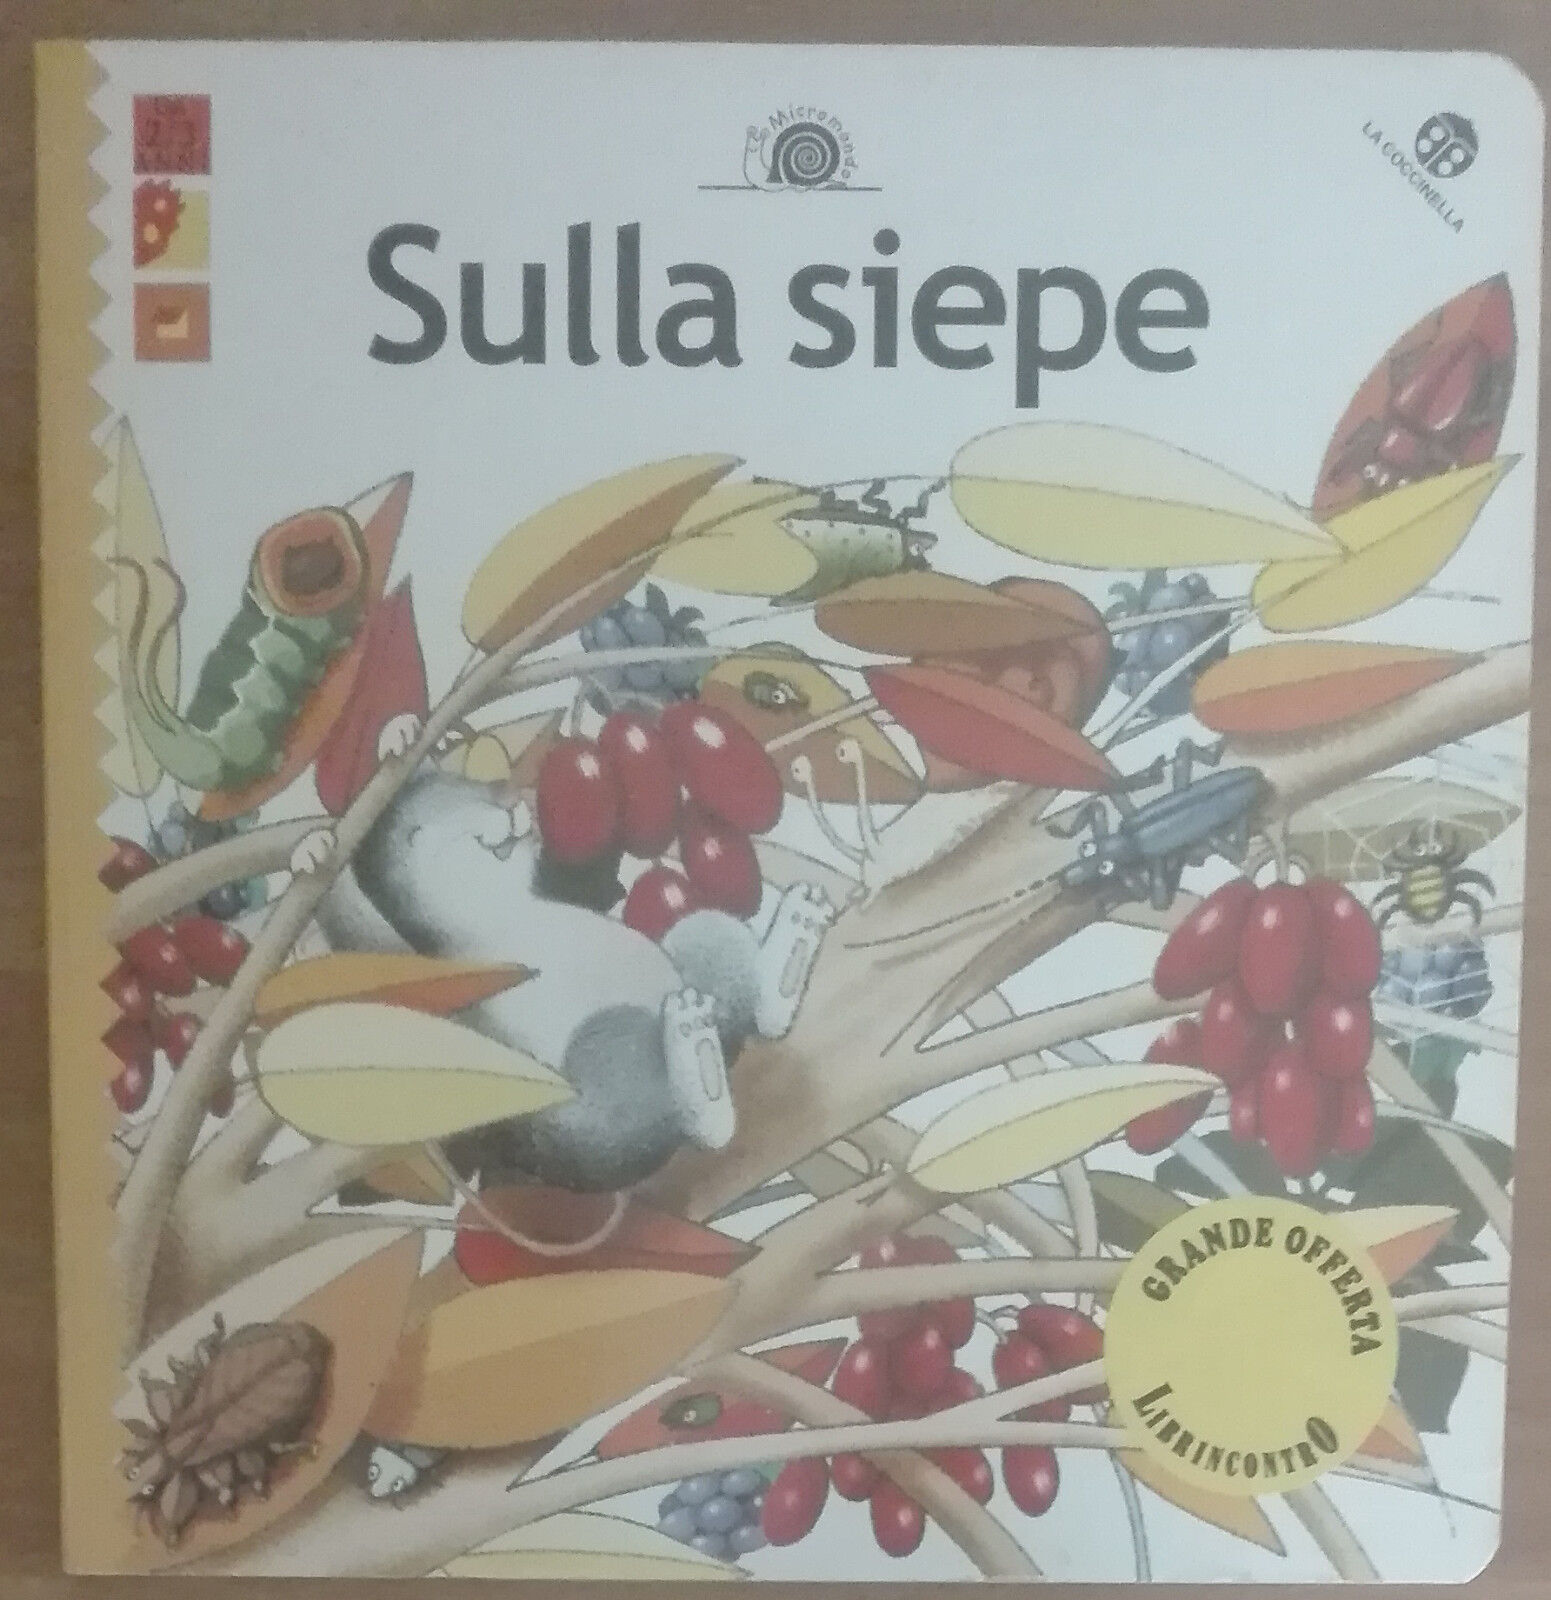 Sulla siepe - AA.VV. - La coccinella,2001 - A libro usato